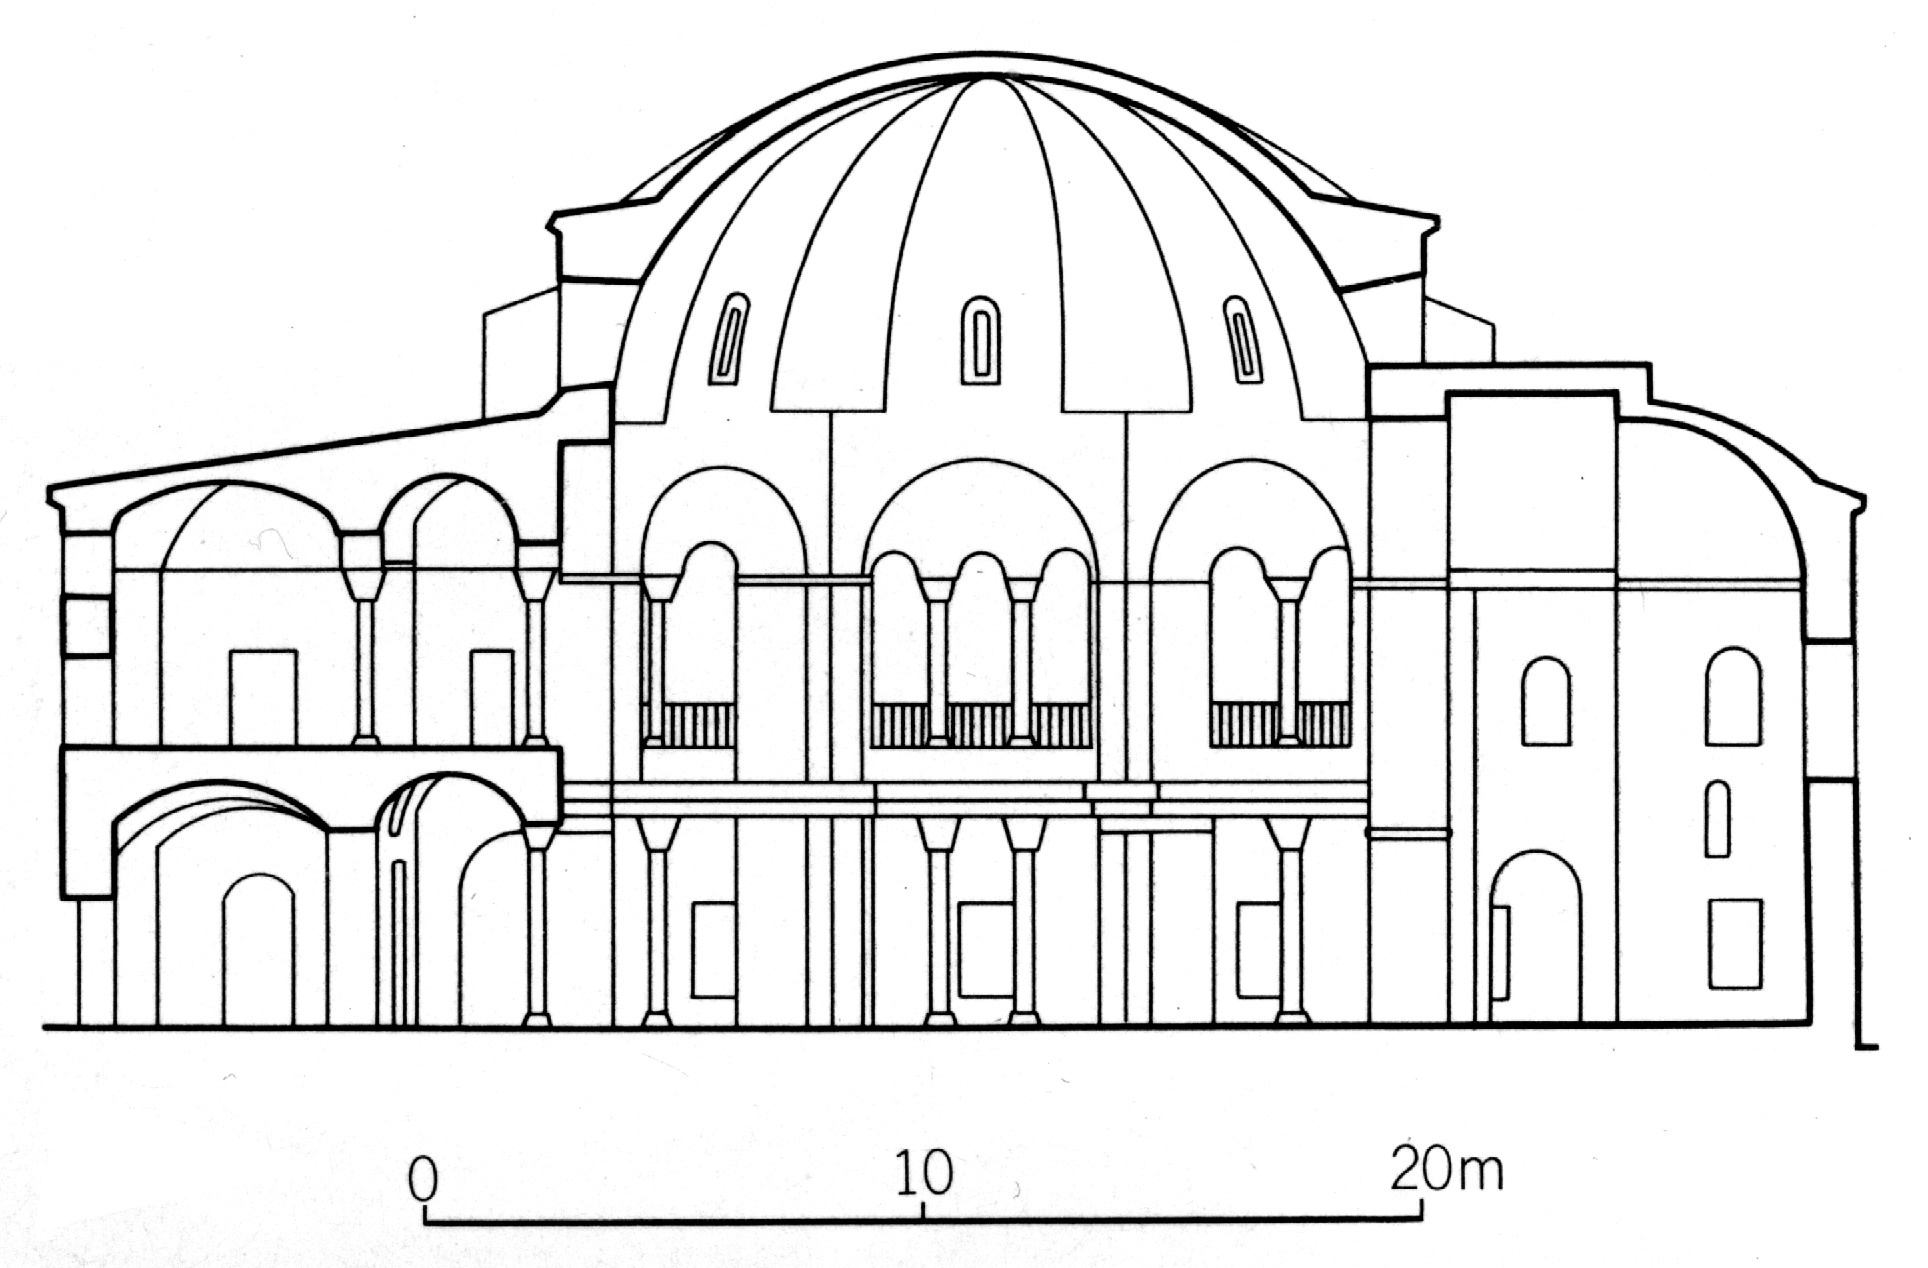 anthemius(推测)   结构及主要材料:砖,石,拱及穹顶   风格:拜占庭